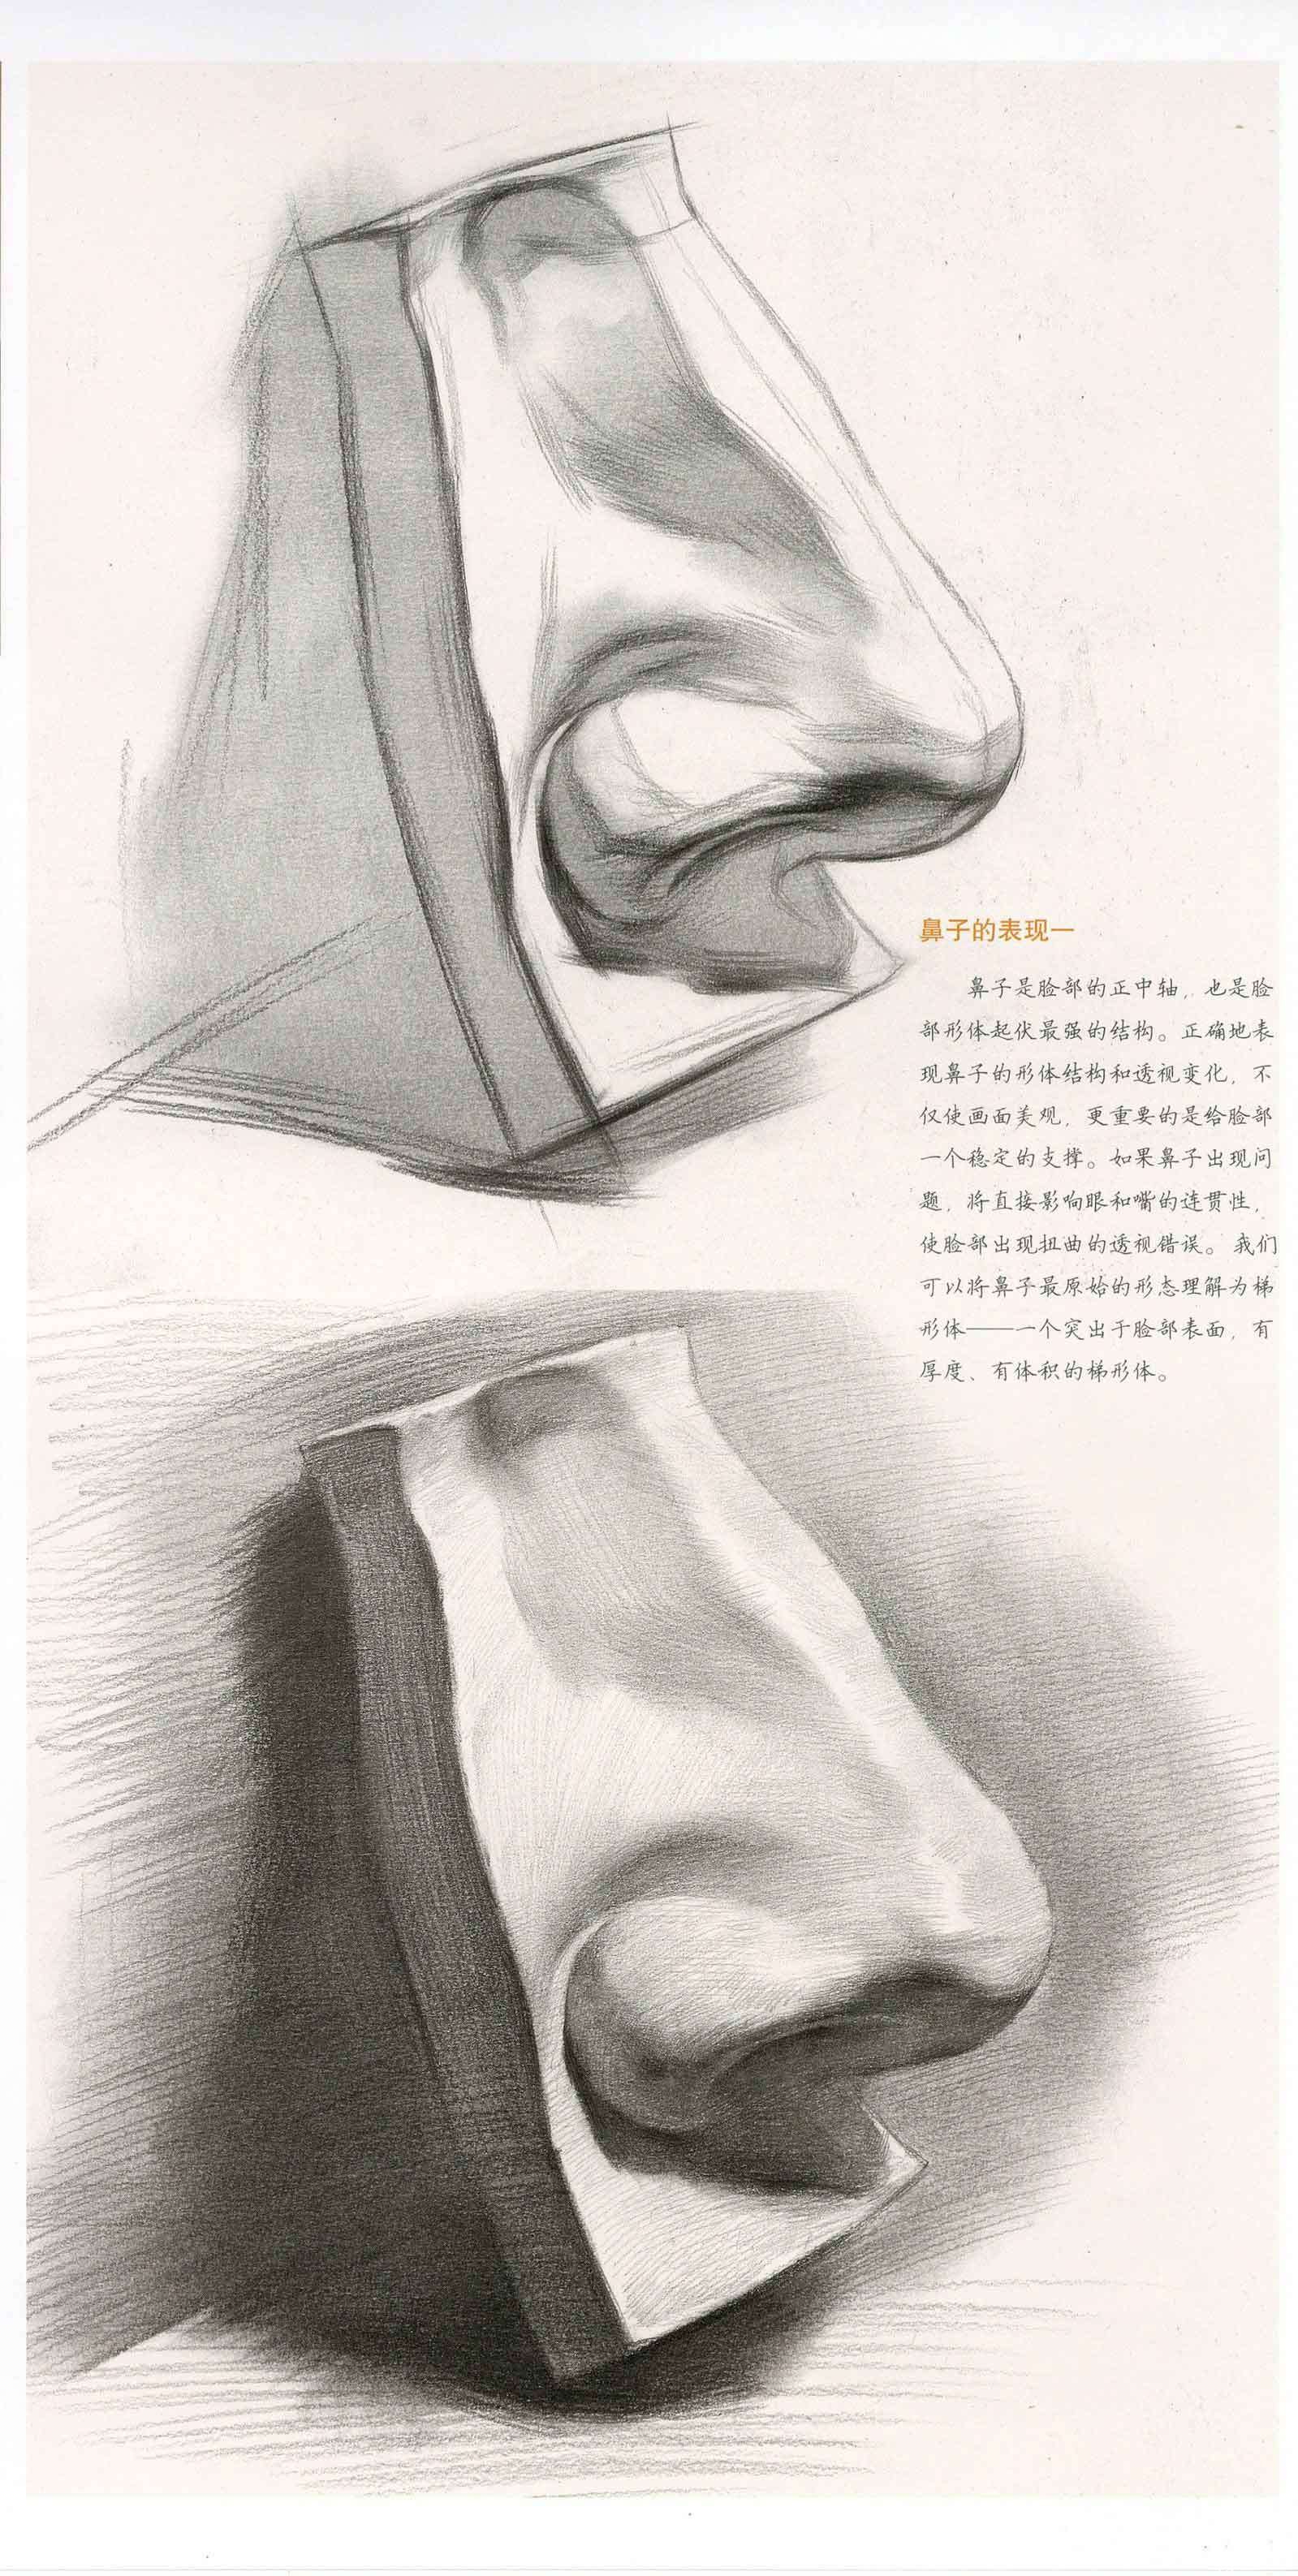 石膏鼻子素描画法步骤图片 鼻子画法教程_素描自学网